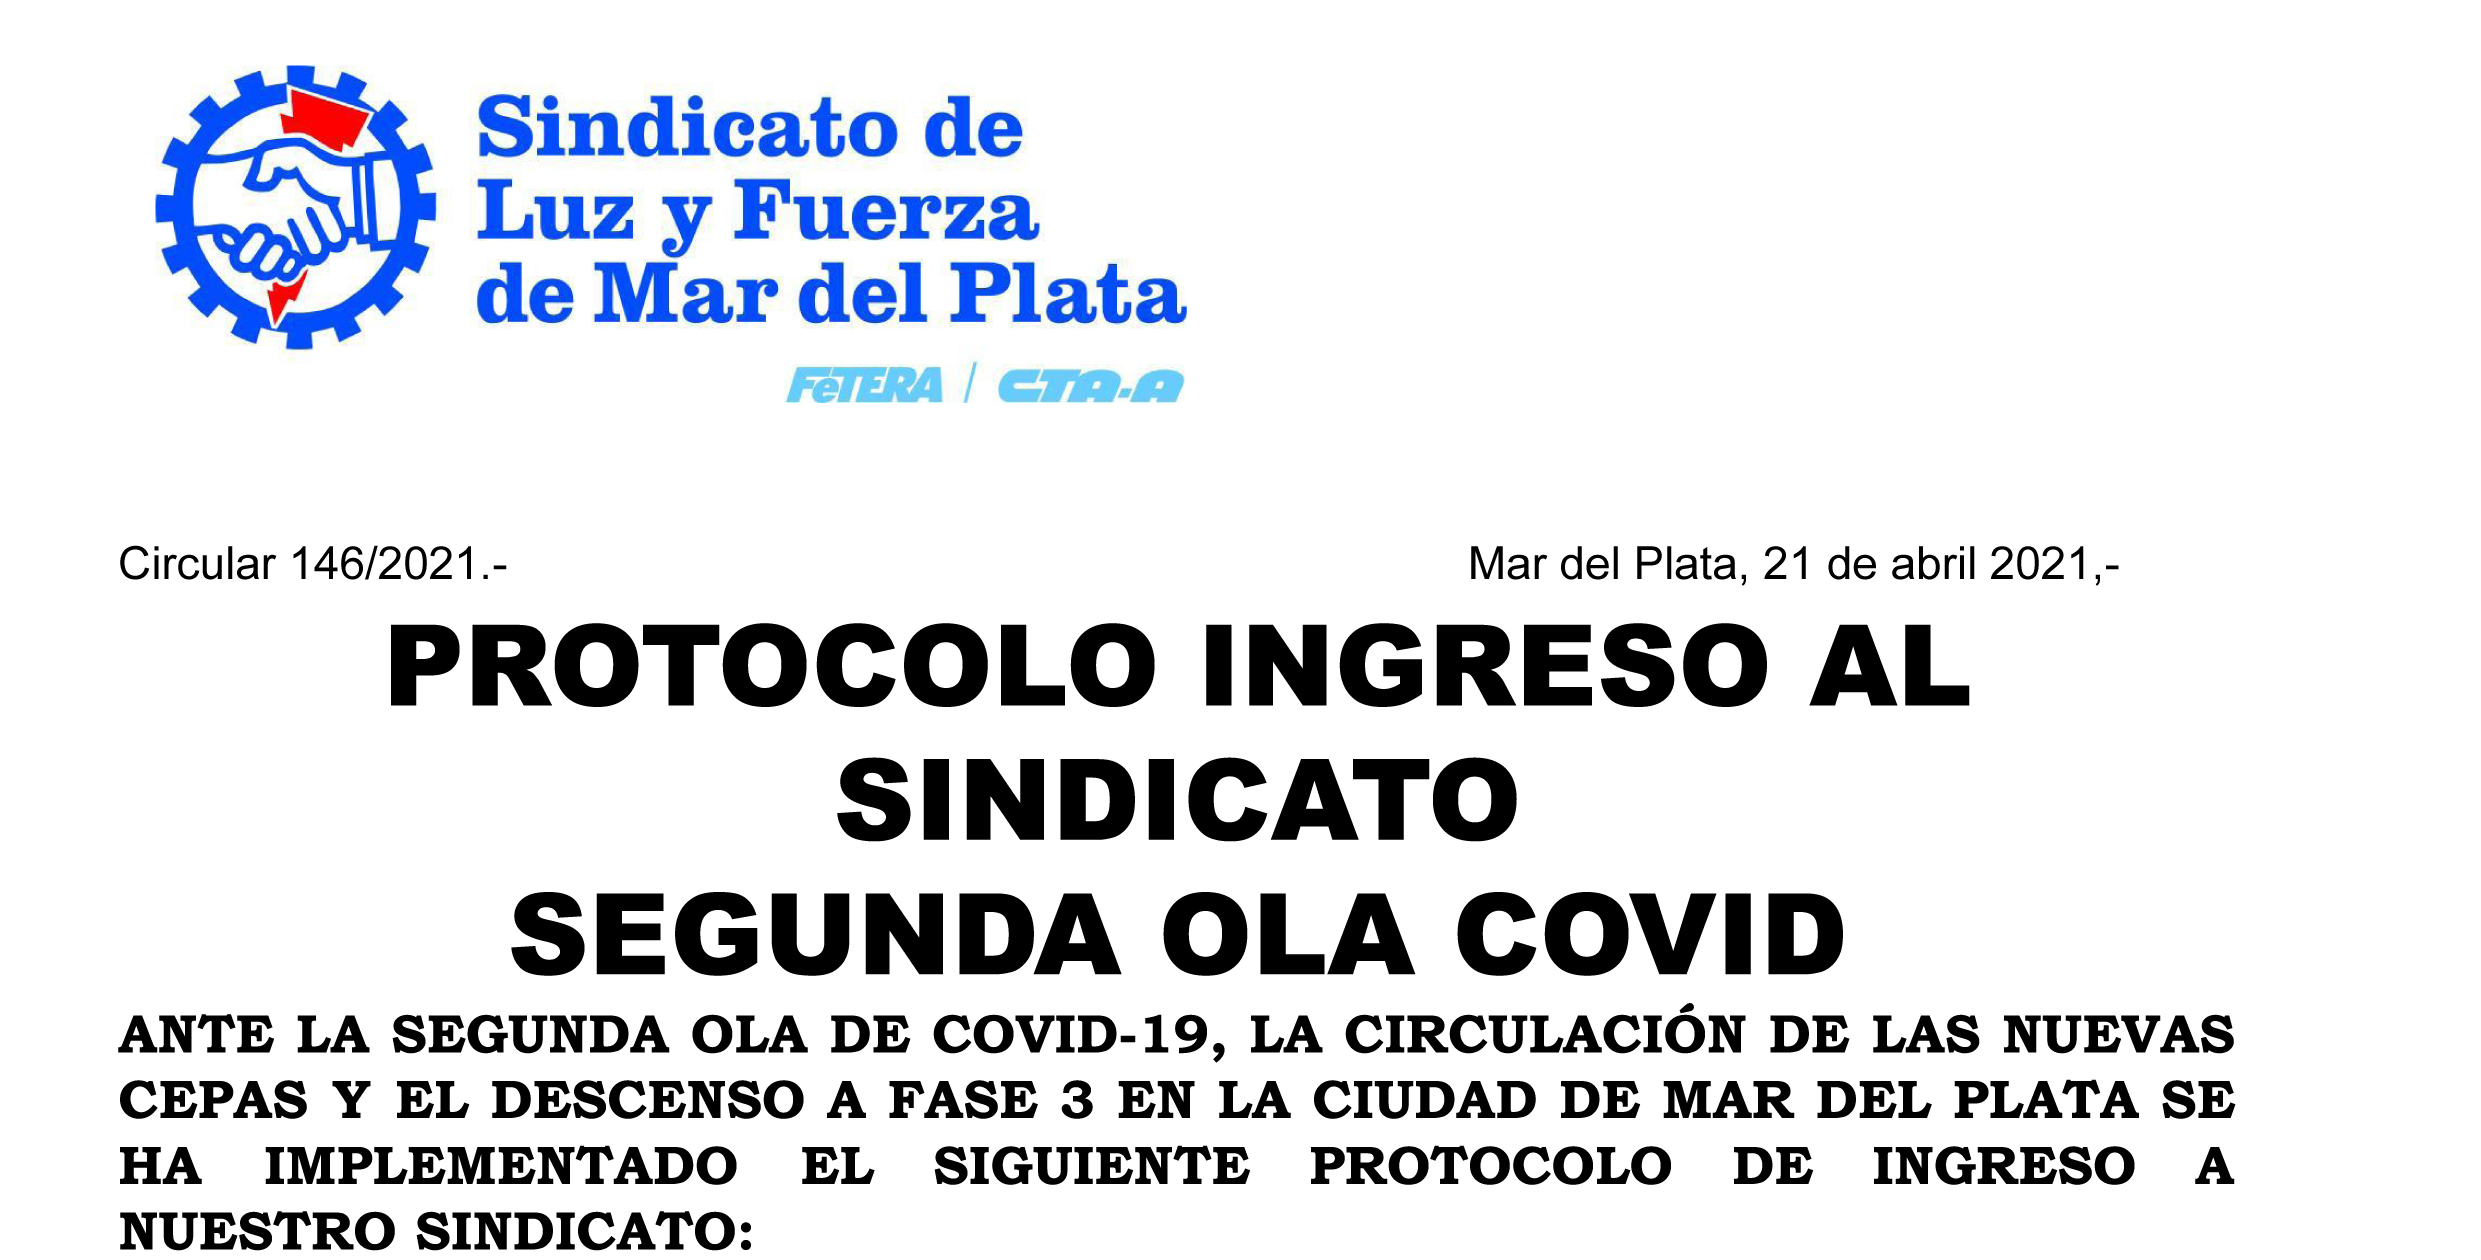 Protocolo de ingreso al Sindicato ante la segunda ola de COVID